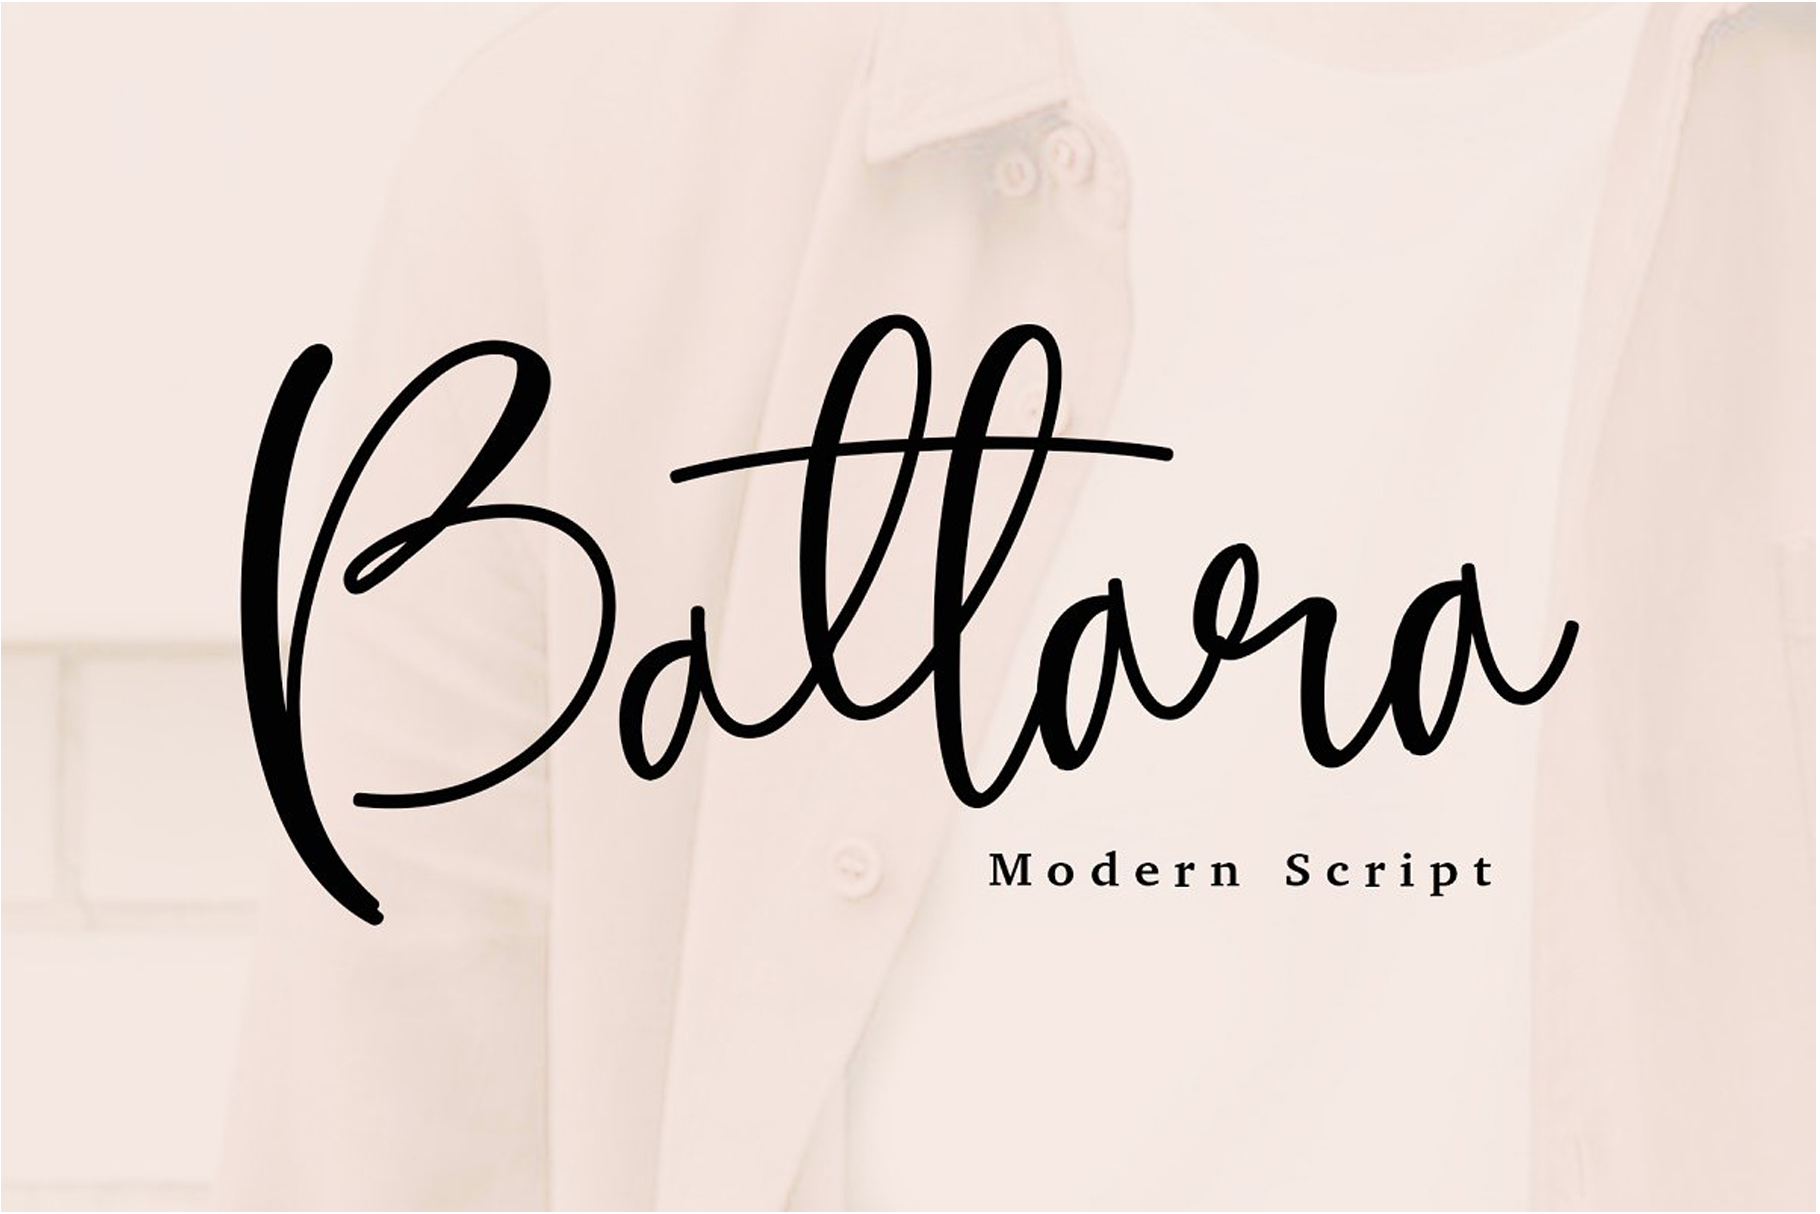 Battara Script Font